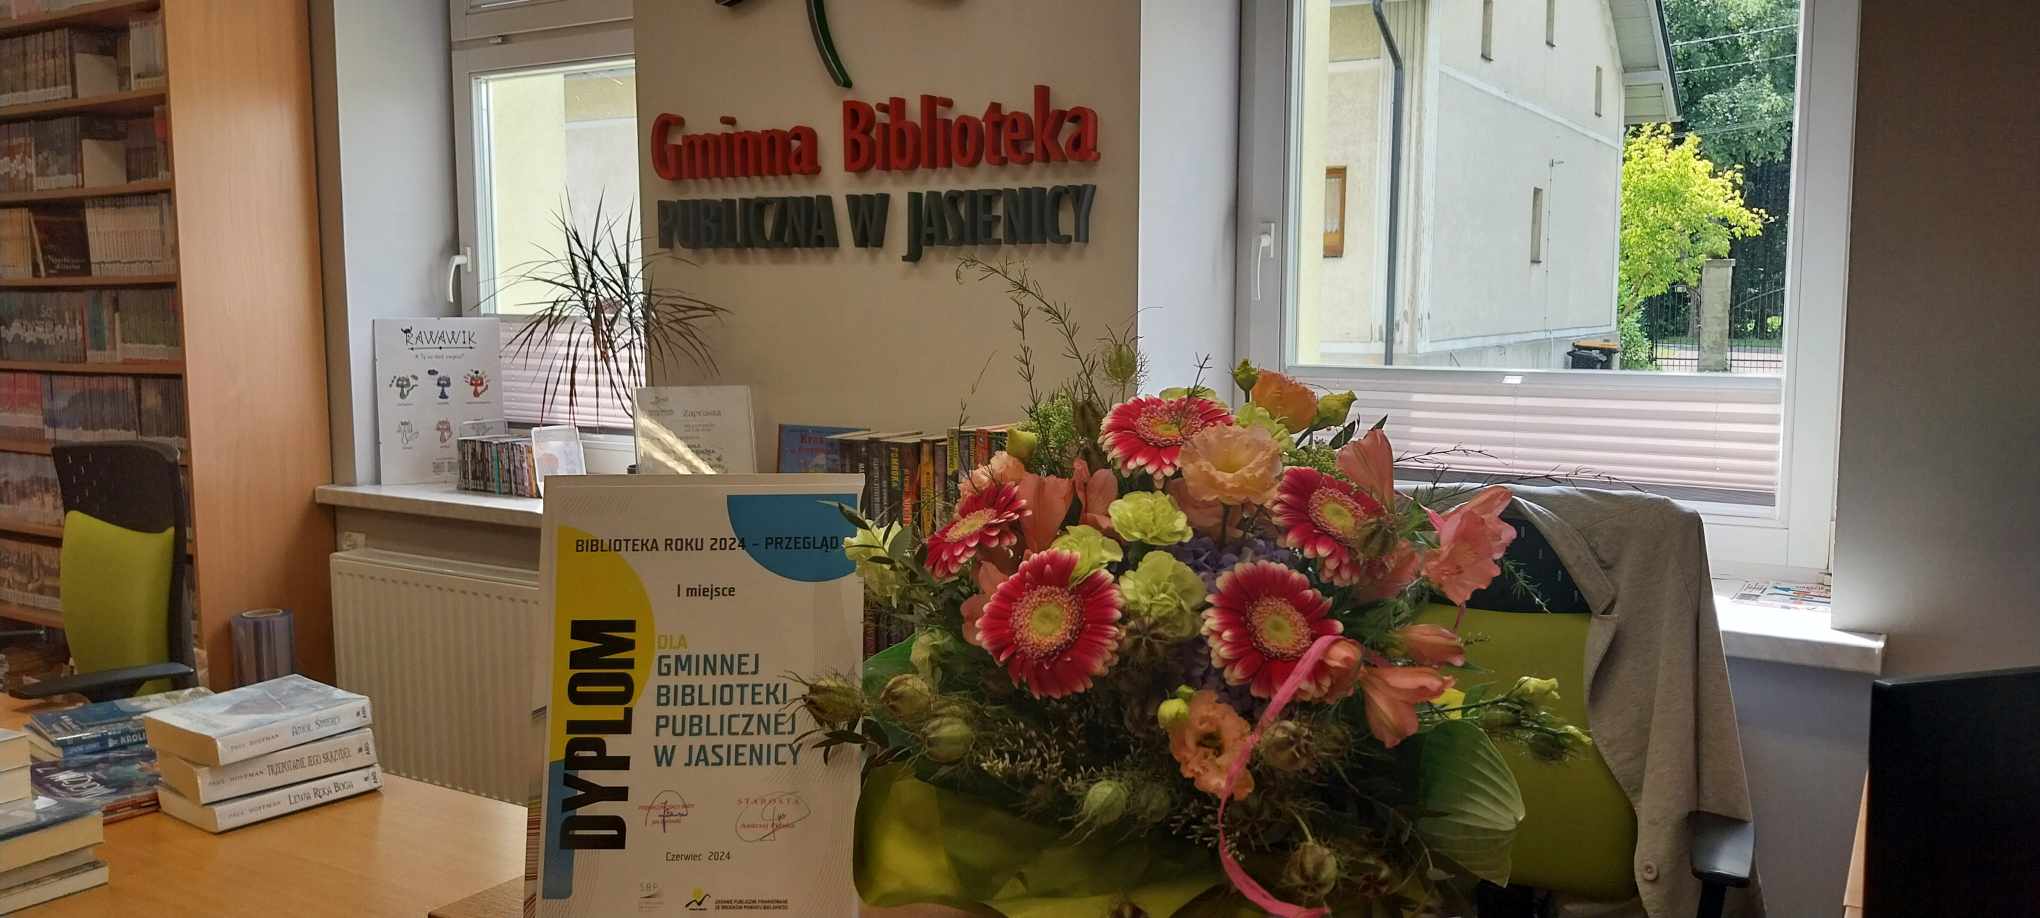 Zdjęcie przedstawia w centralnym punkcie dyplom, kwiaty a w tle napis "Gminna Biblioteka Publiczna w Jasienicy", po lewej stronie znajduje się regał z książkami oraz stos książek położony na biurku. 